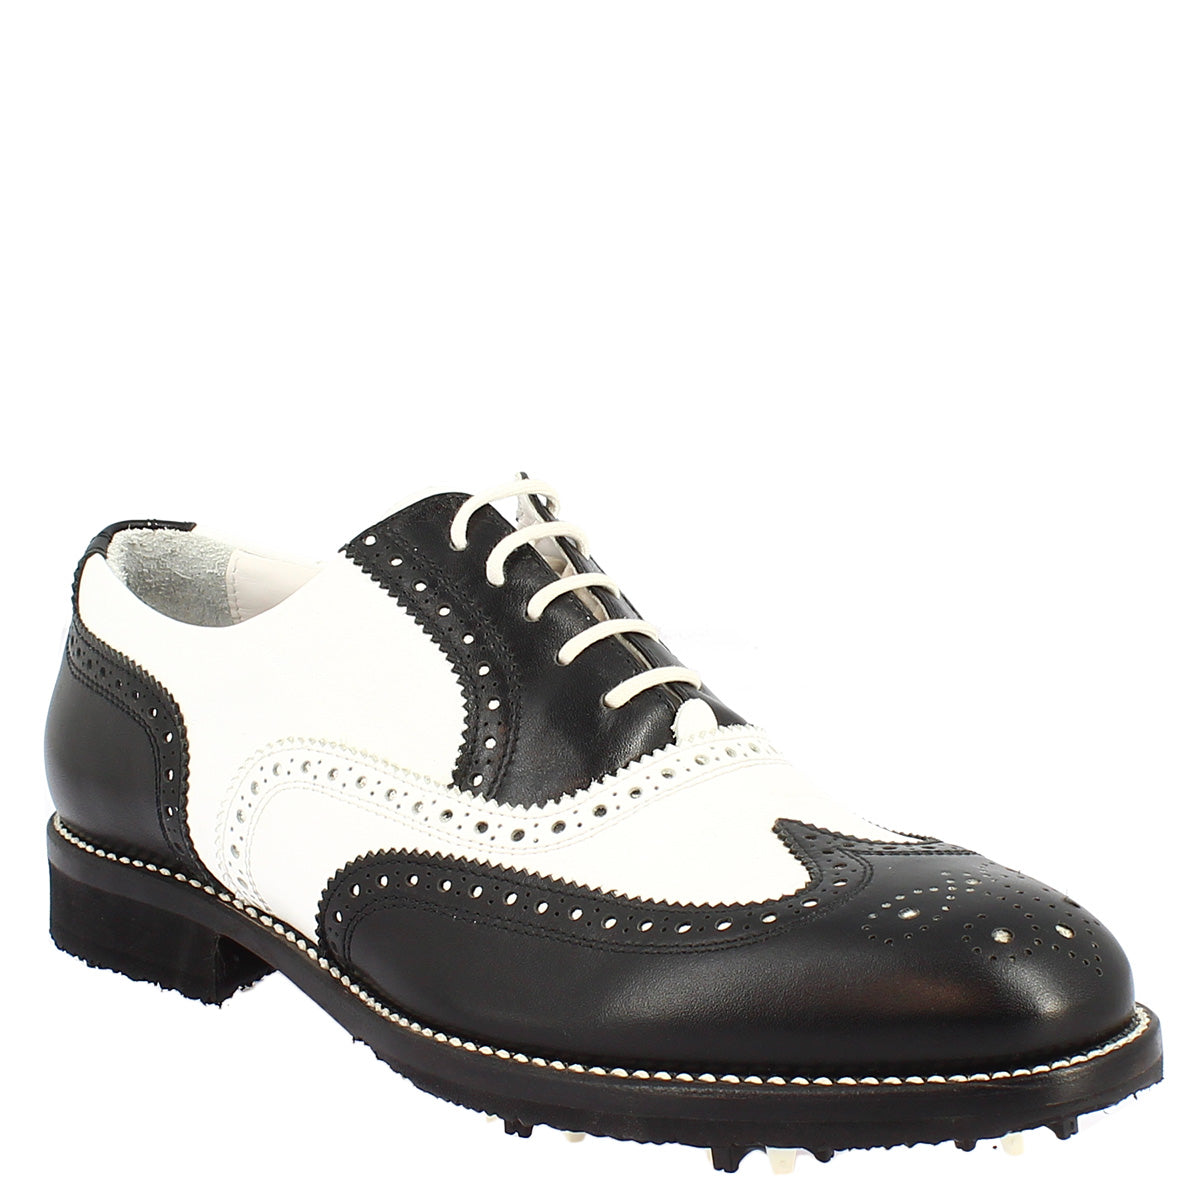 Chaussures hommes bicolores - cuir de veau - brillant noir et blanc